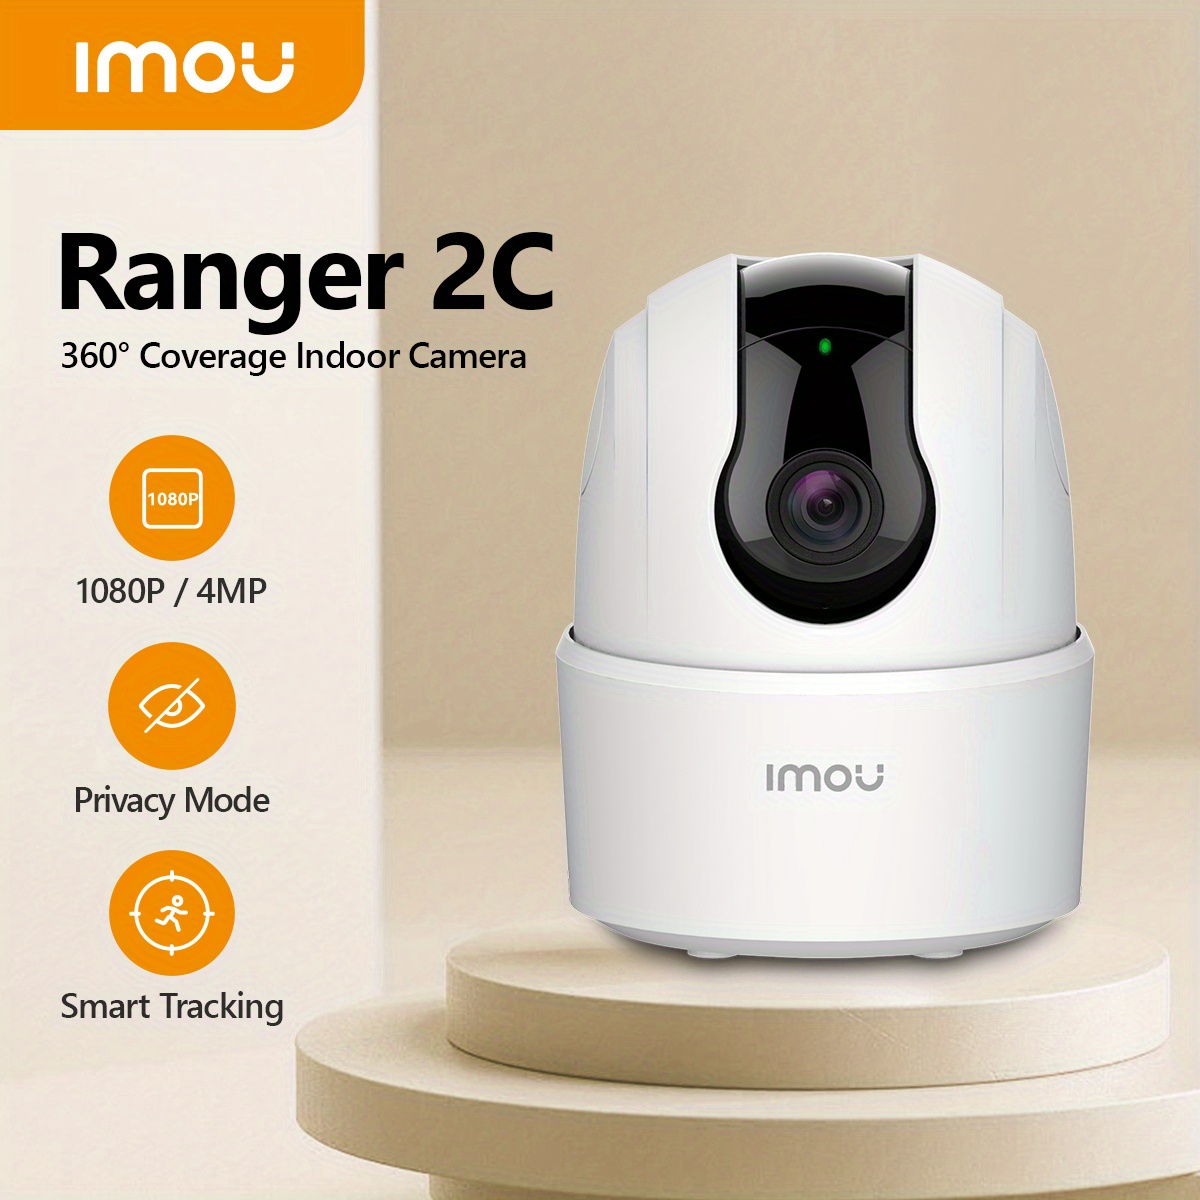 Imou A22EP Ranger 2C Security Camera User Guide